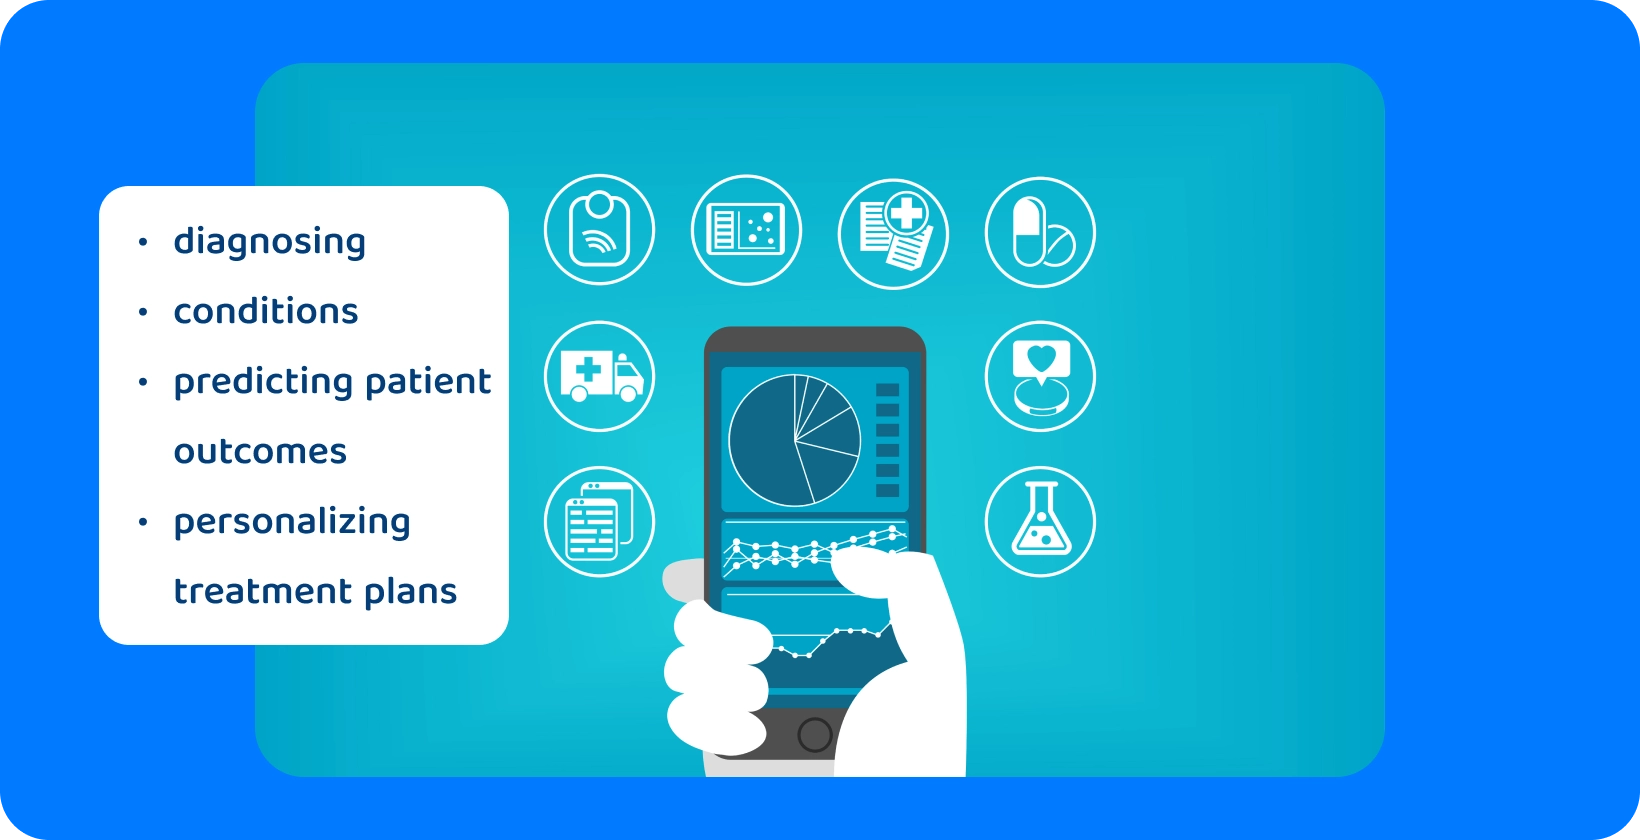 Ręka trzymająca smartfona wyświetlająca wykres kołowy, otoczona ikonami reprezentującymi różne usługi opieki zdrowotnej.